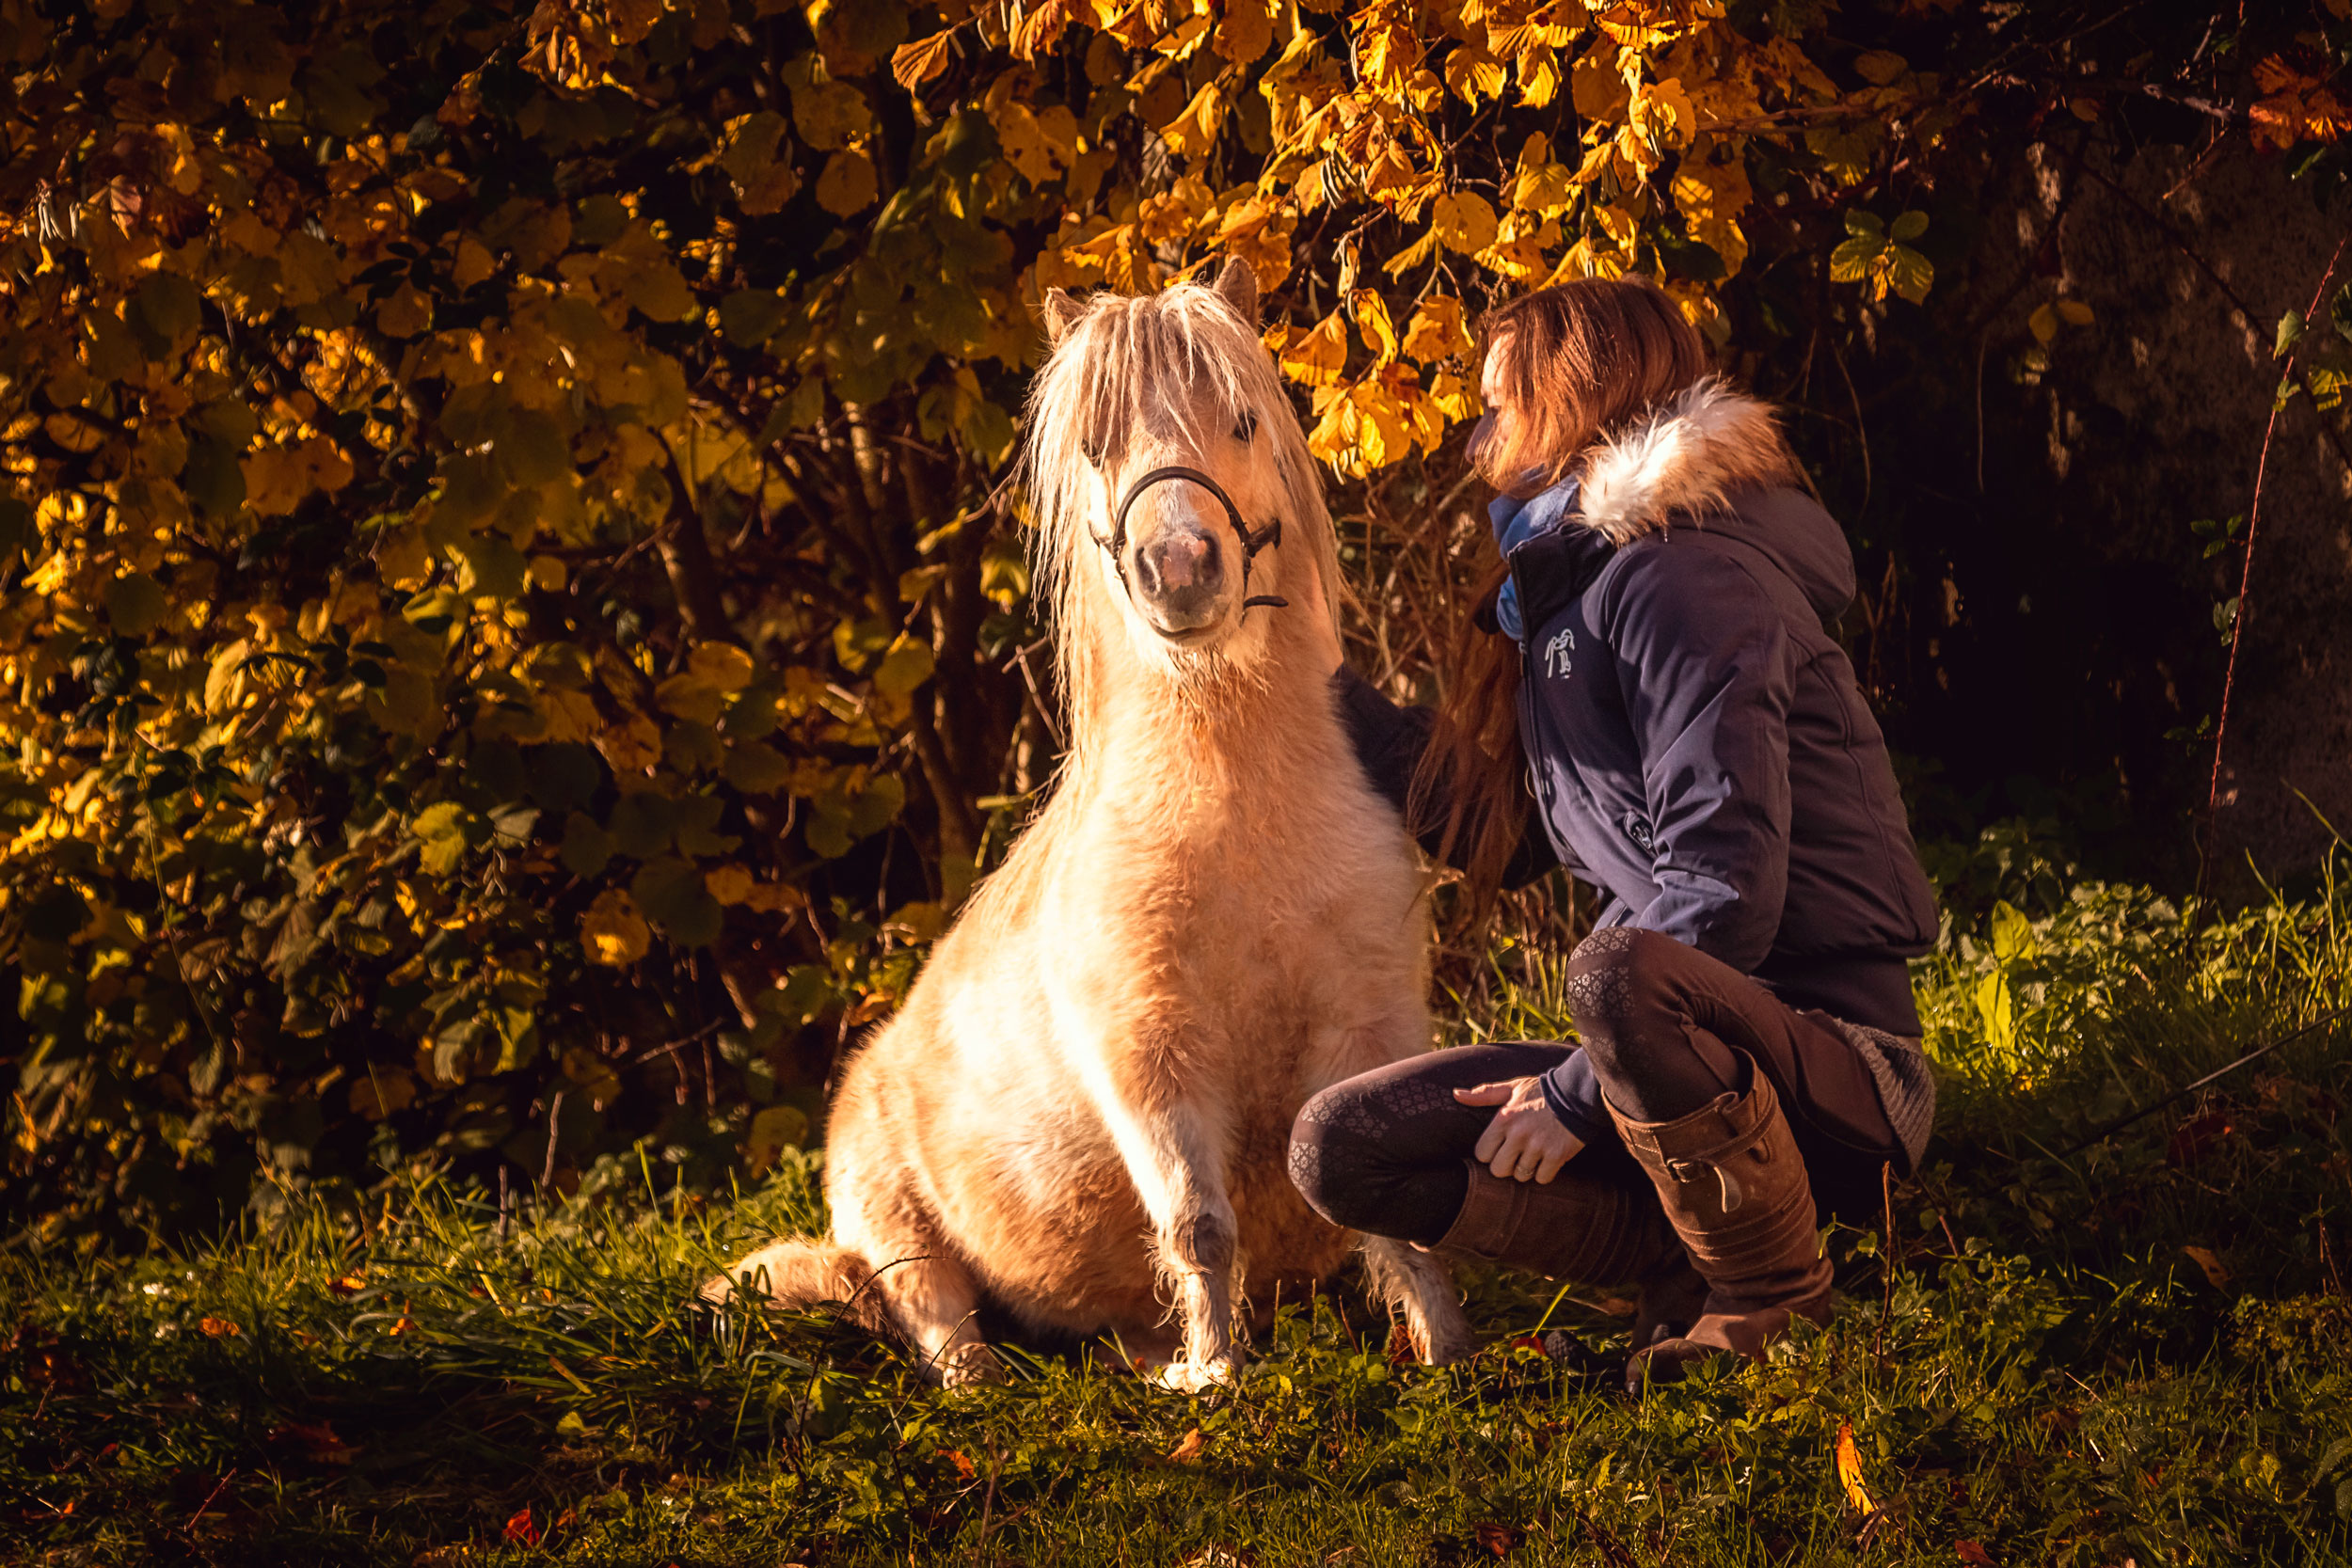 Comment avoir des objectifs avec son cheval mais pas d'attentes ? - Laure Souquet - Formations équestres De Femme à Cheval